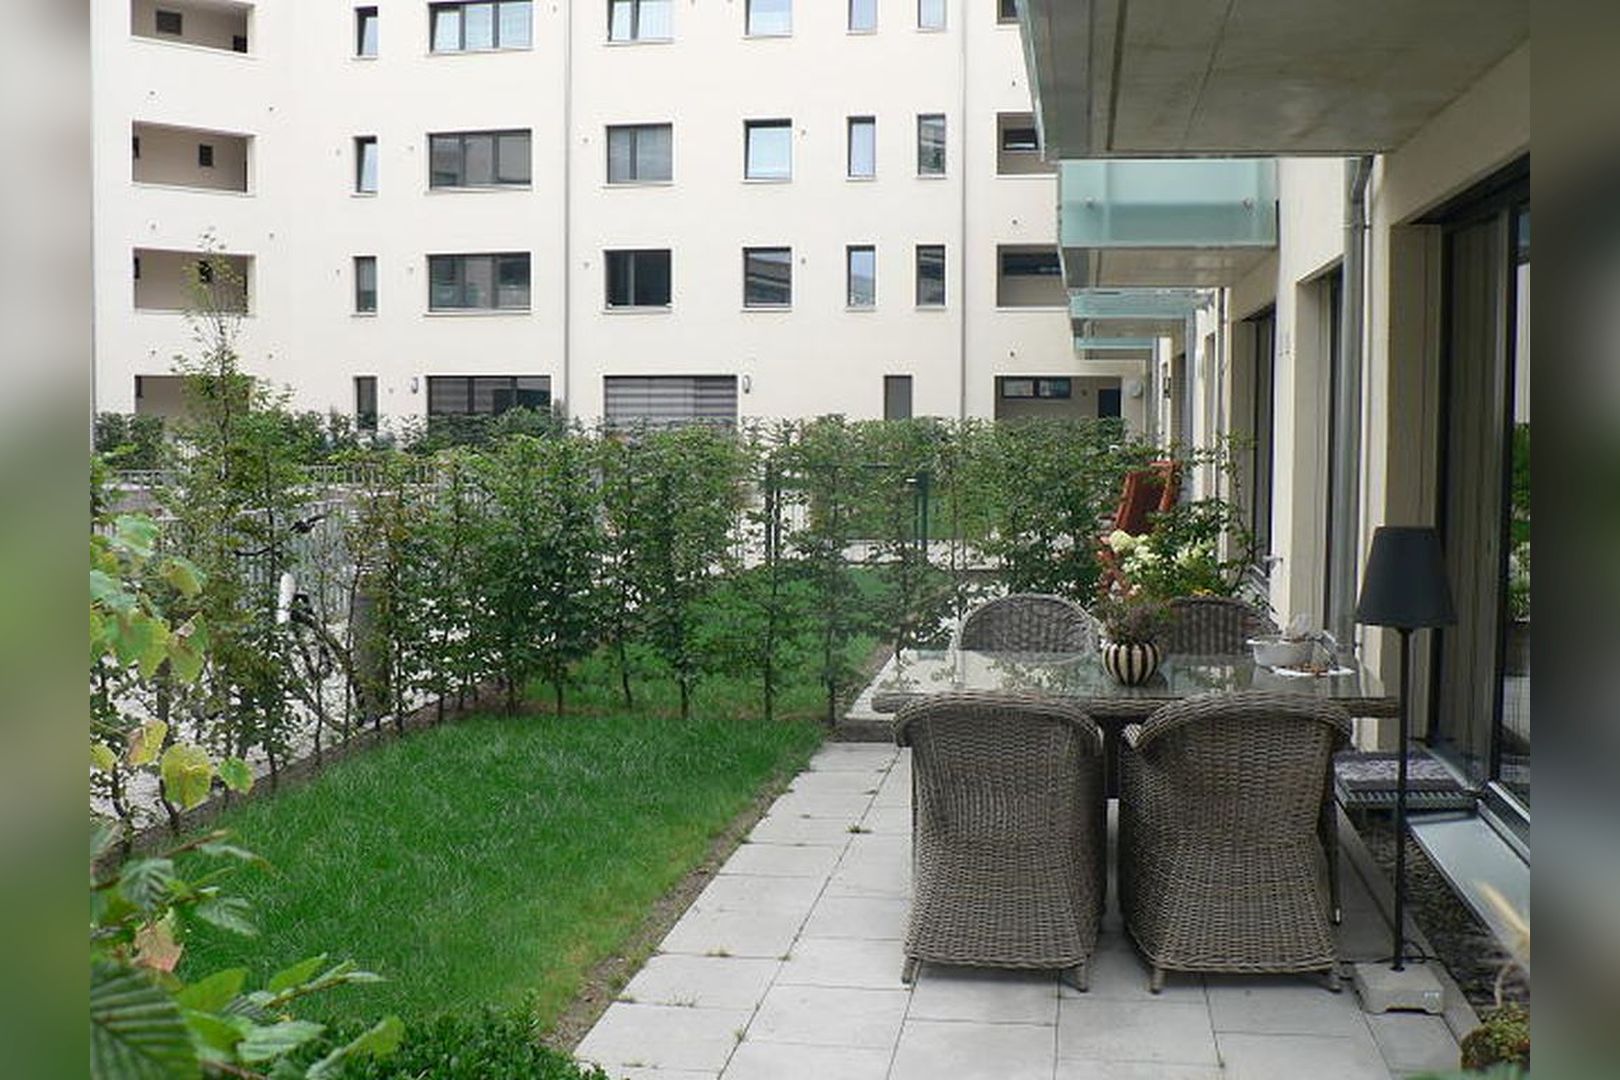 Immobilie Nr.Hilden 005 - 2-Raum-Maisonette-Wohnung mit Terrasse & Gärtchen - Bild 5.jpg